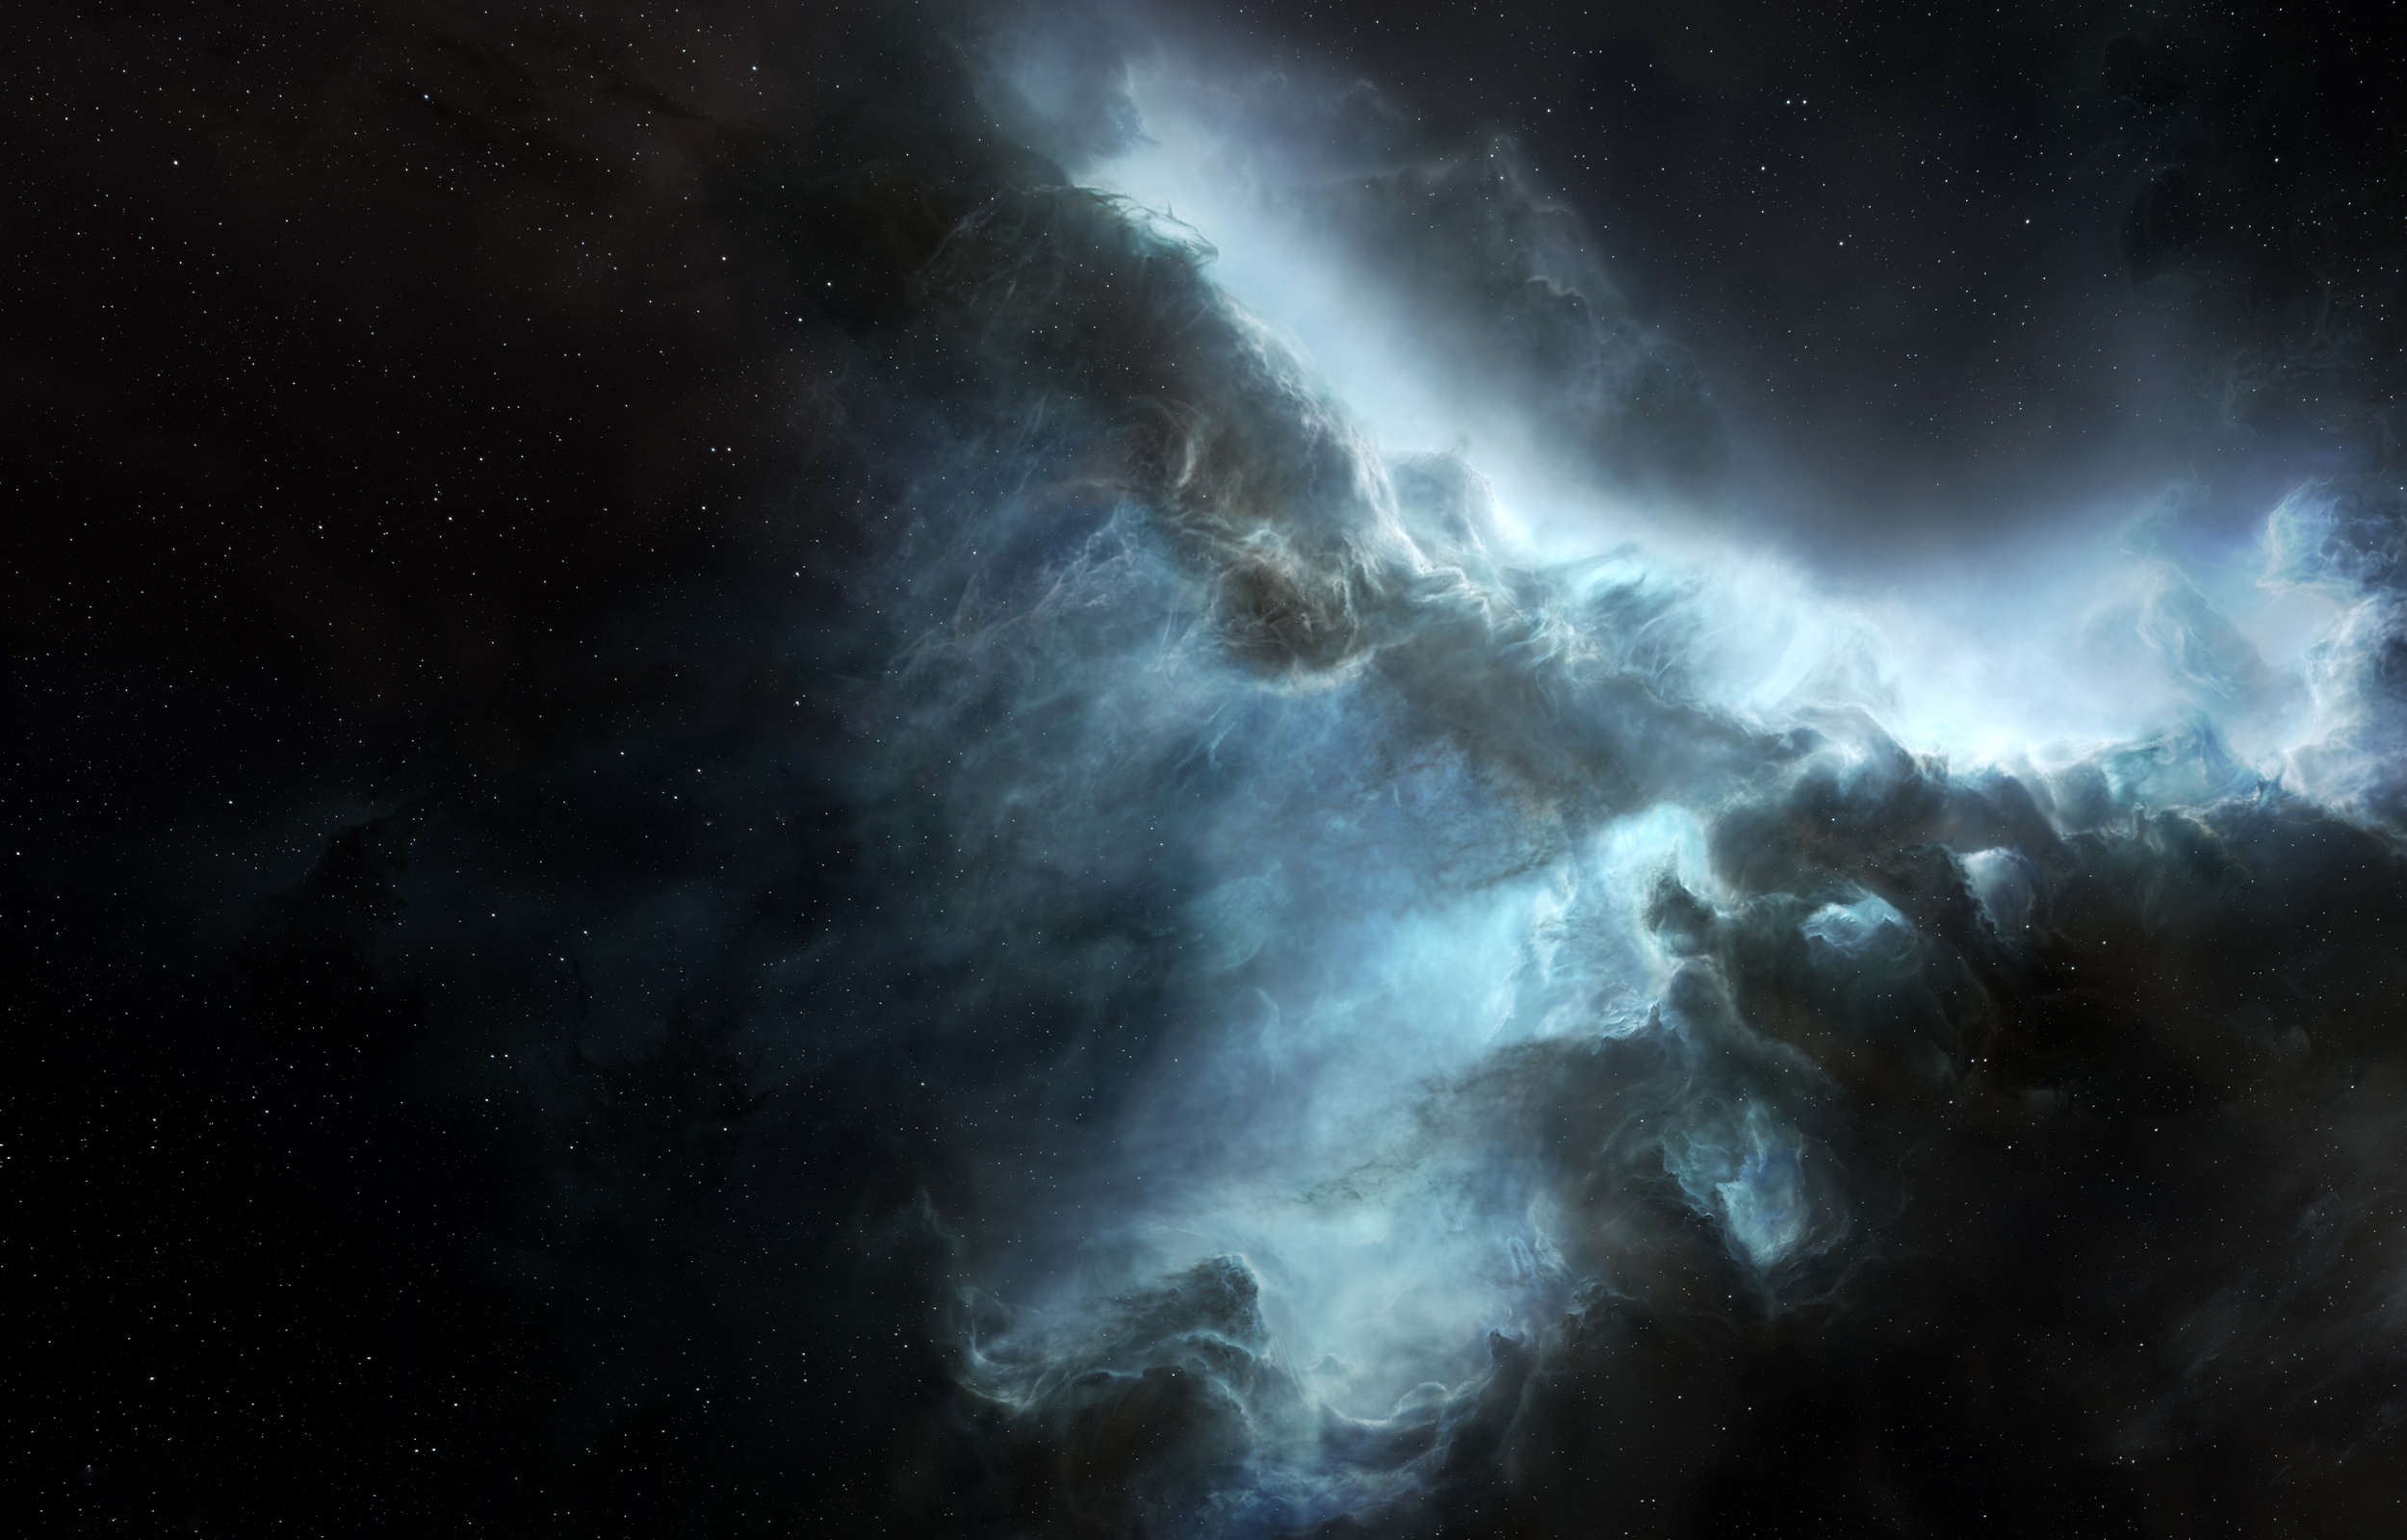 Nebula HD Wallpaper Background Image Id